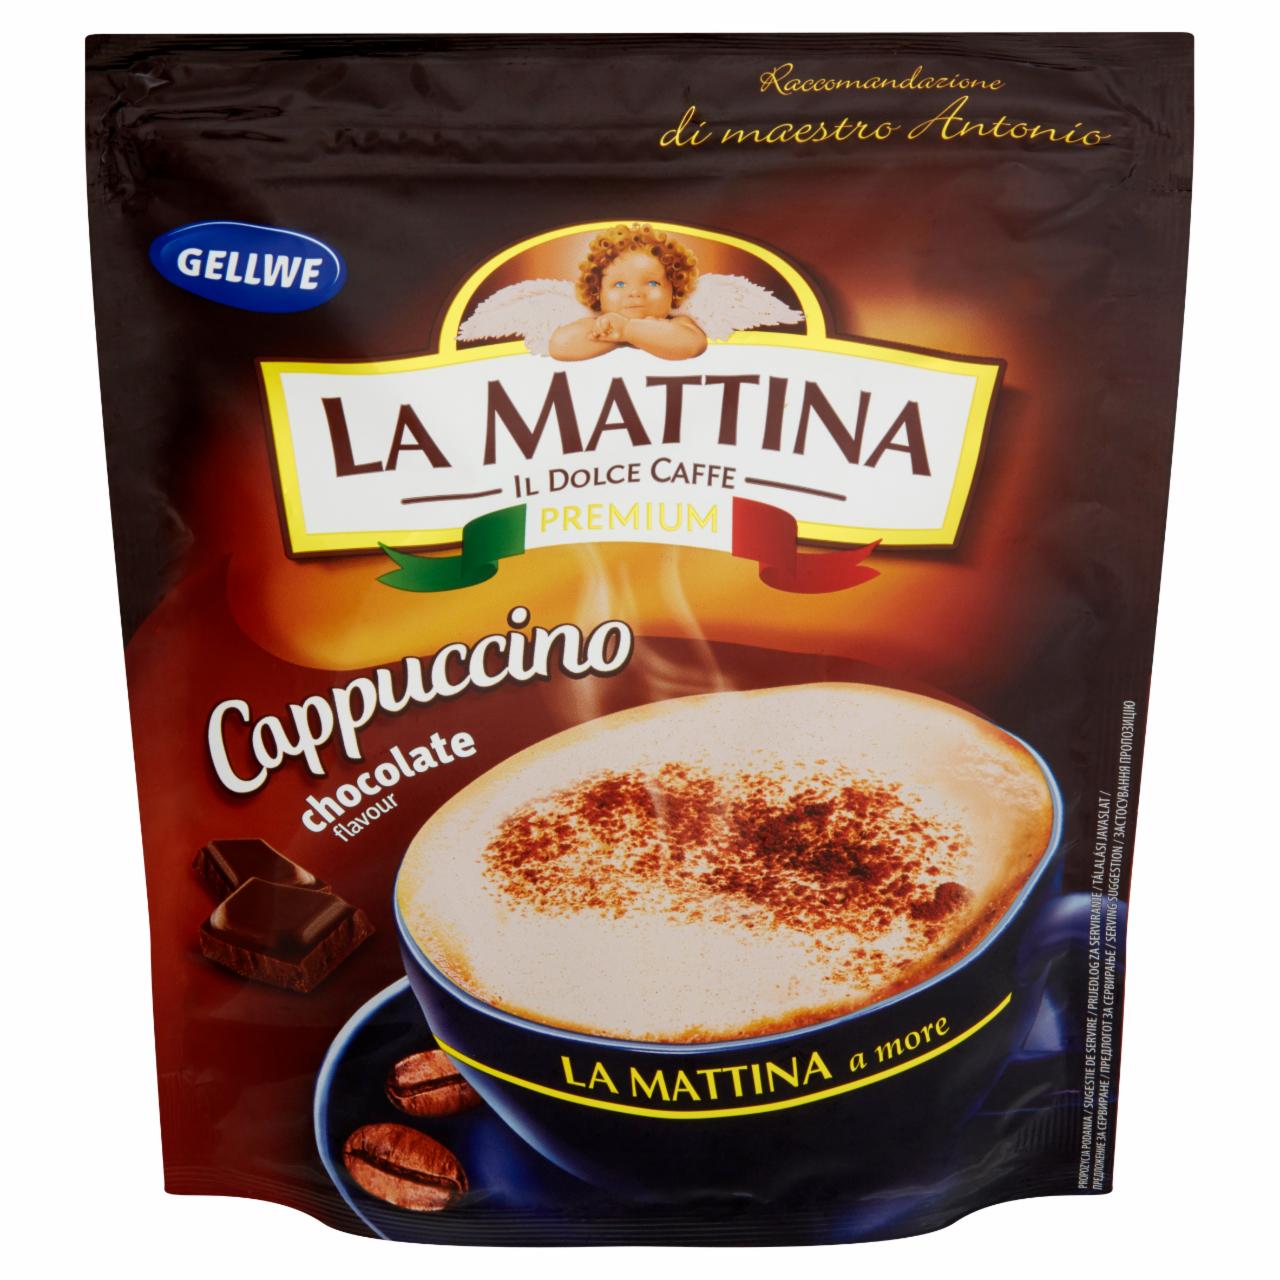 Zdjęcia - Gellwe La Mattina Napój kawowy Cappuccino o smaku czekoladowym 100 g